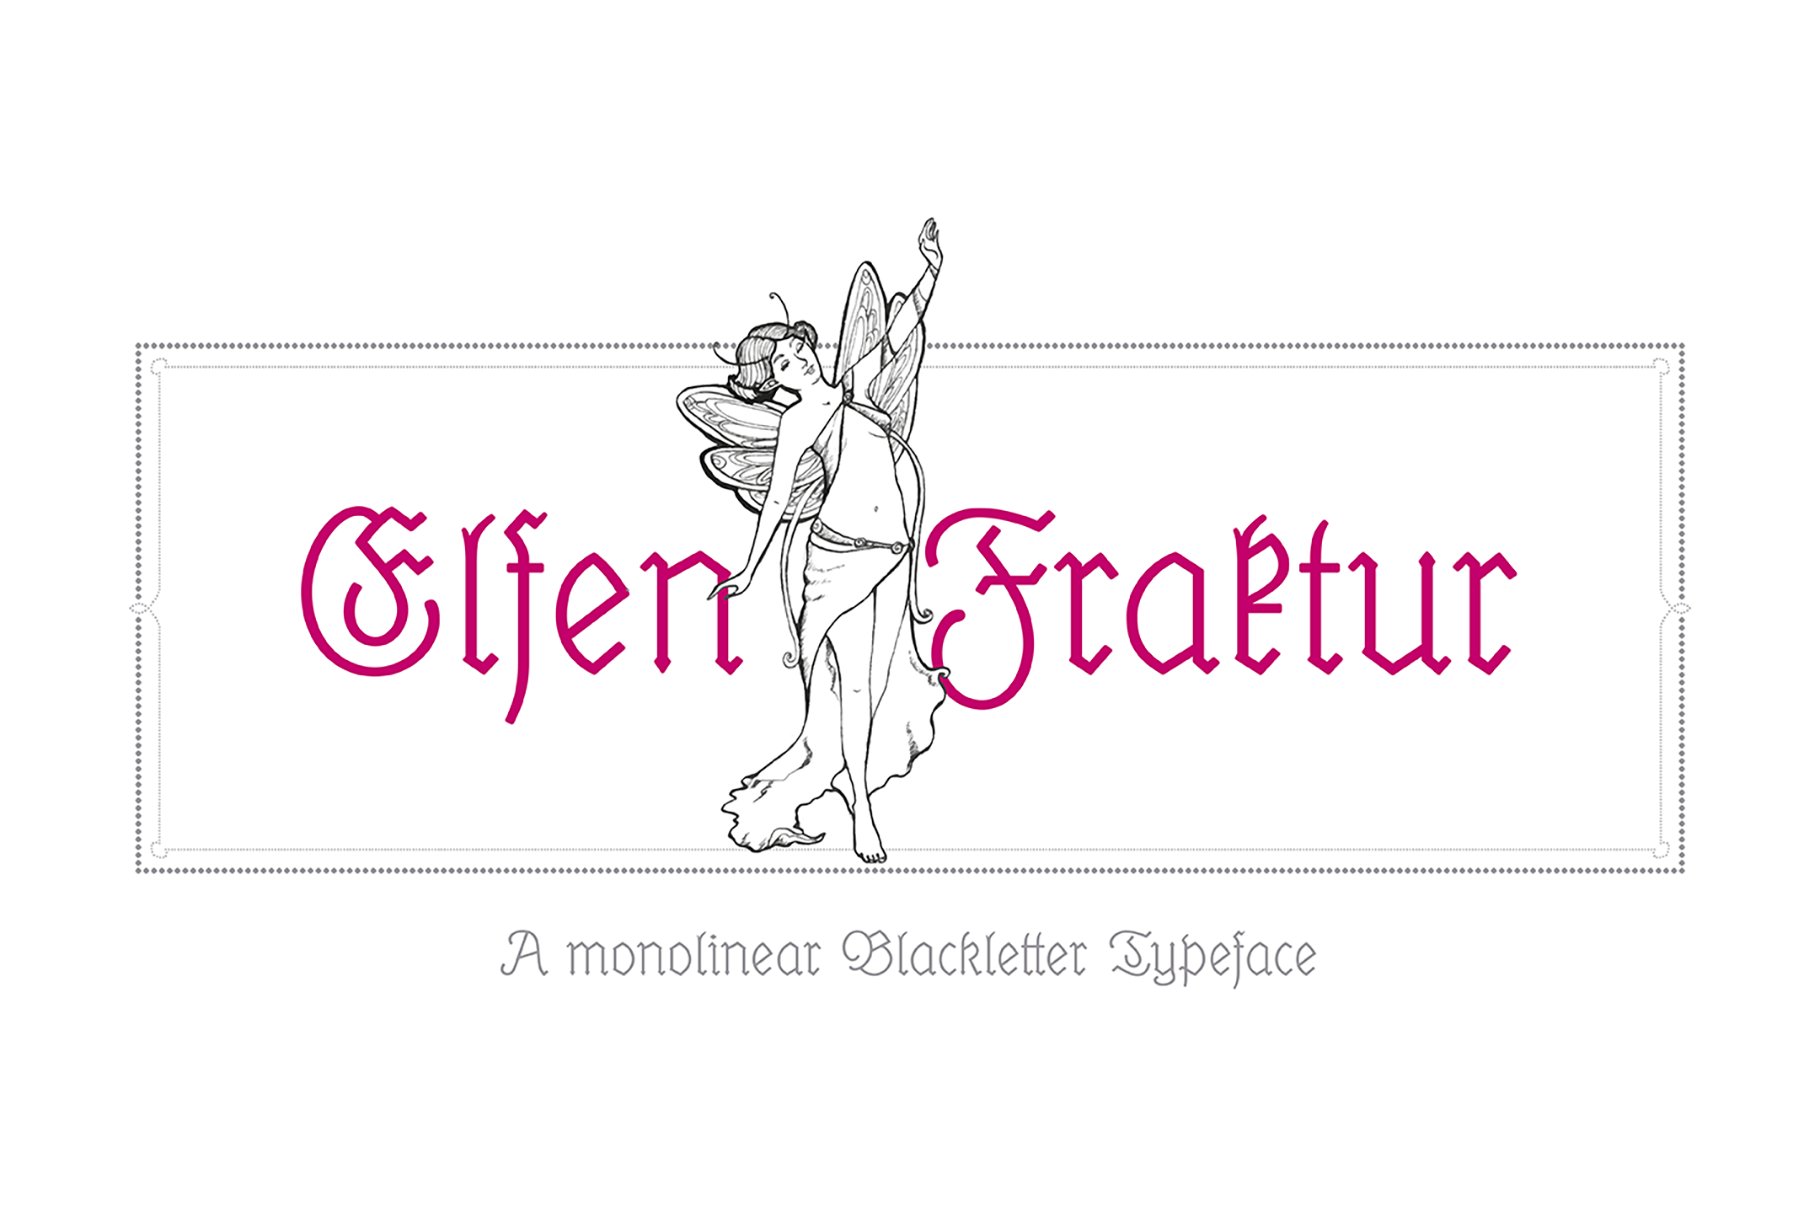 Elfen-Fraktur type family cover image.